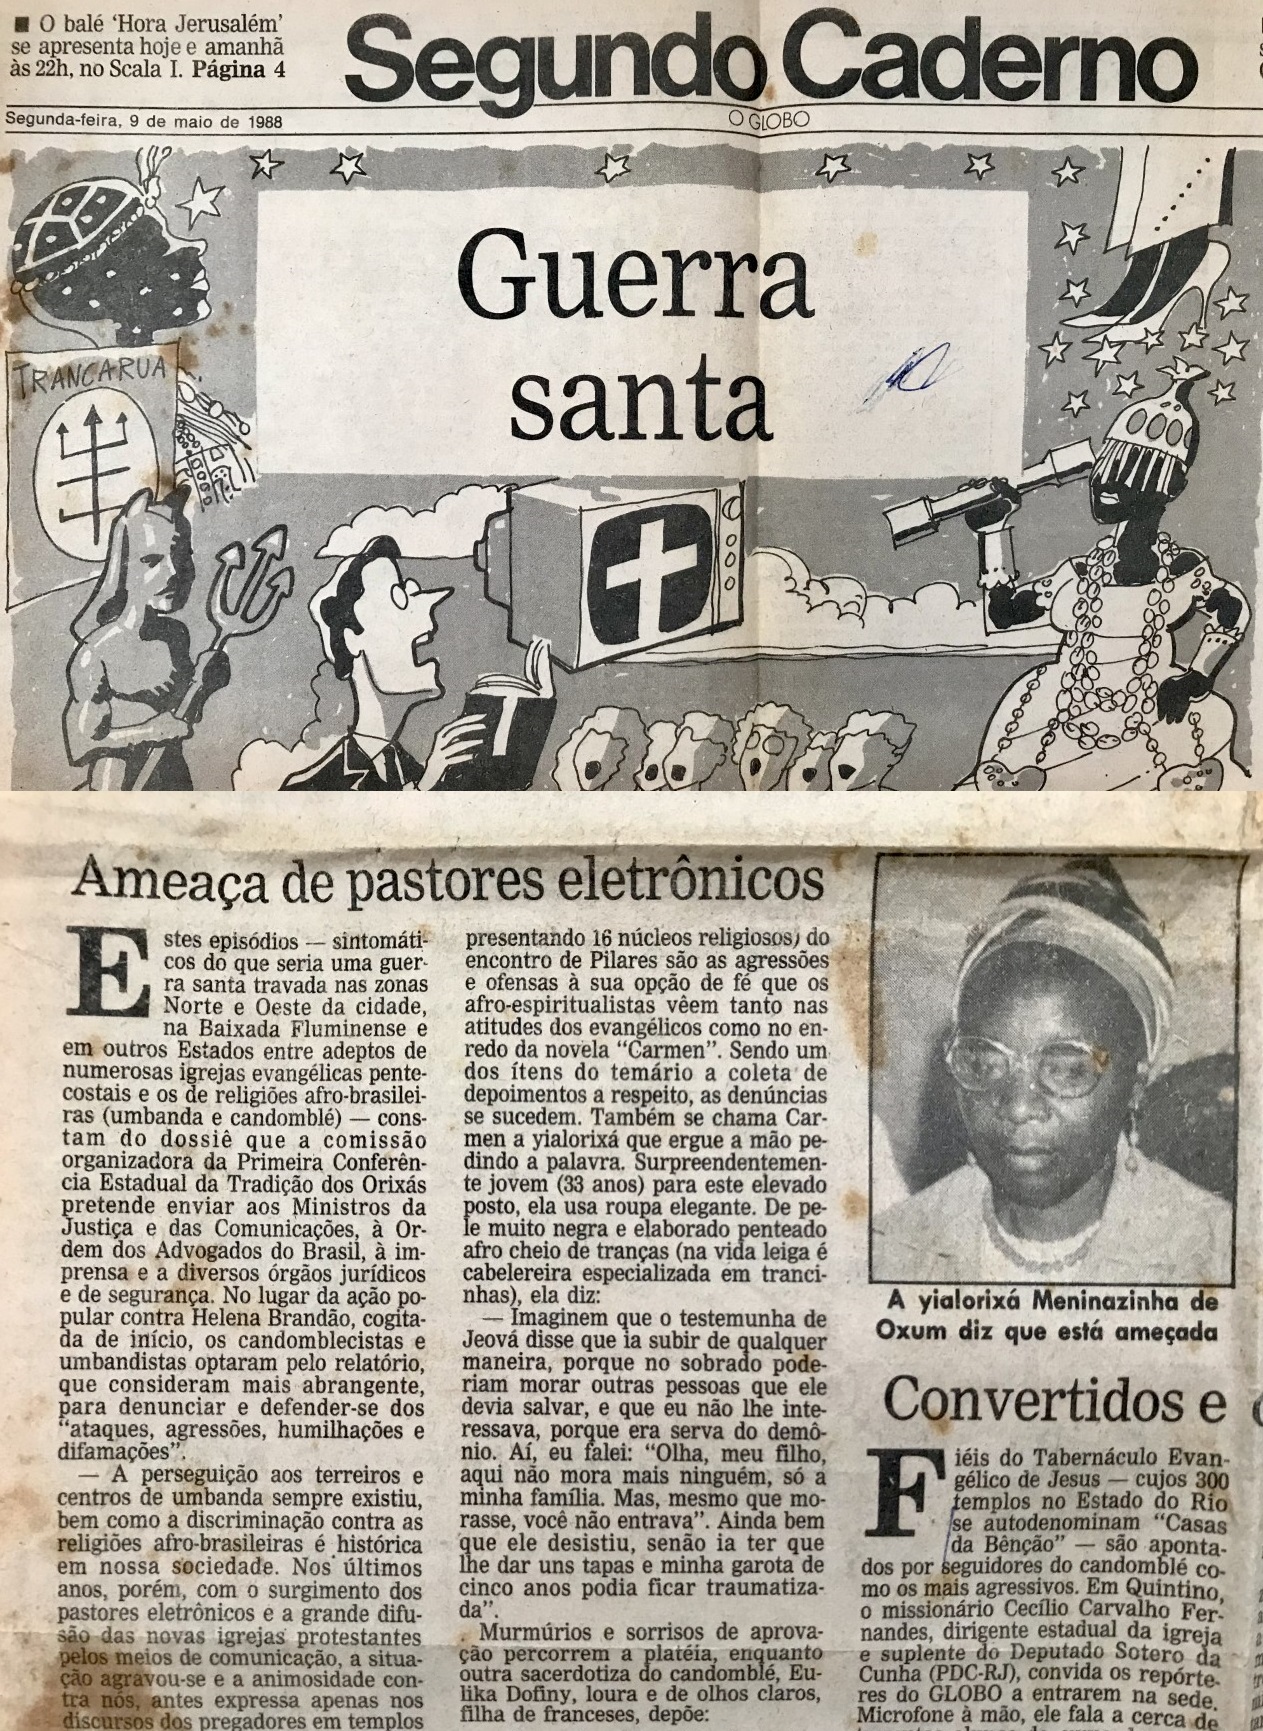 O Globo – Maio de 1988